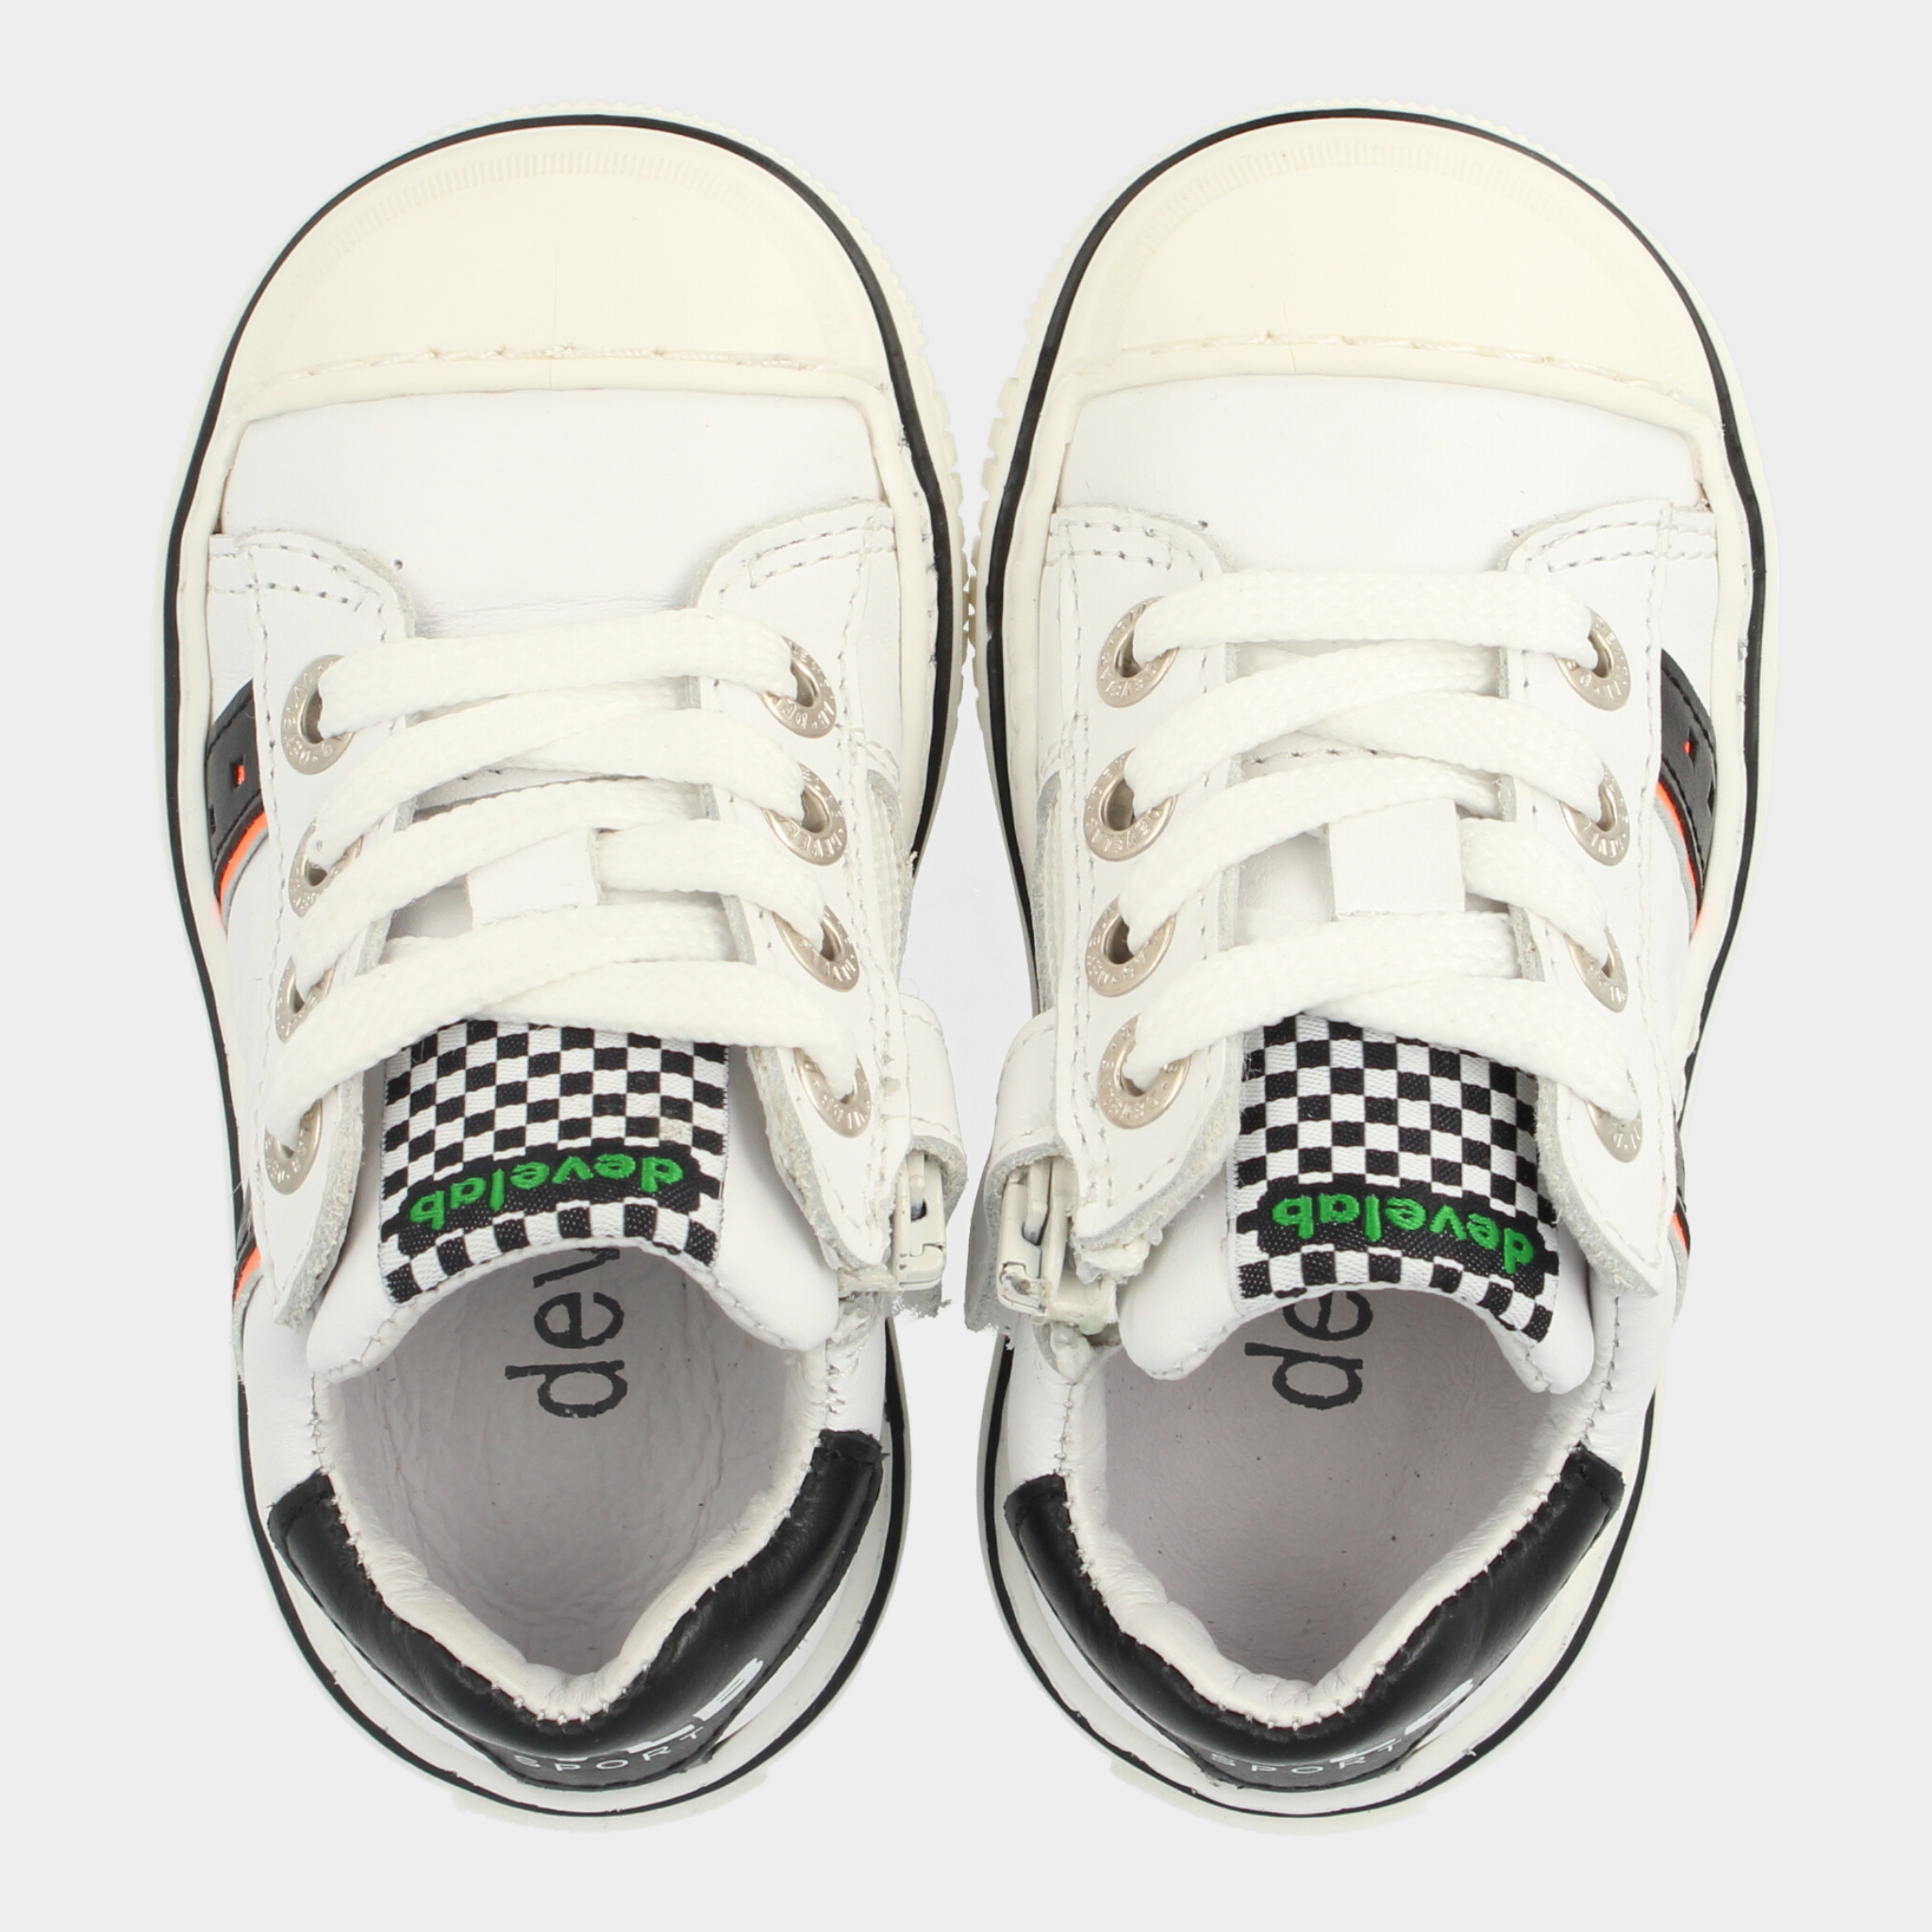 Witte Sneakers | Develab 45025